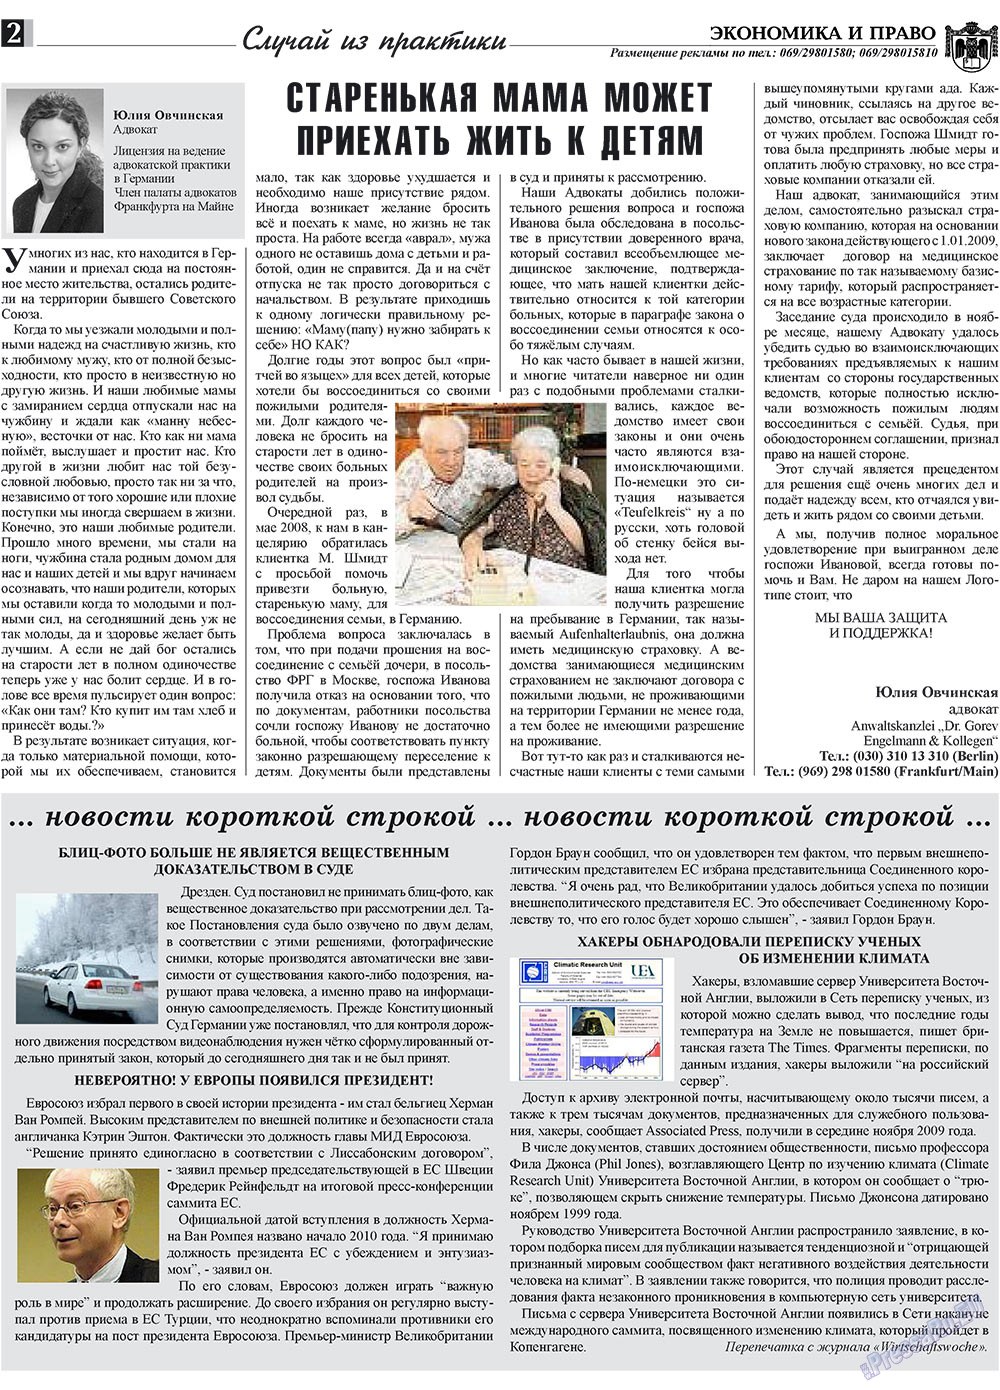 Экономика и право, газета. 2009 №12 стр.2